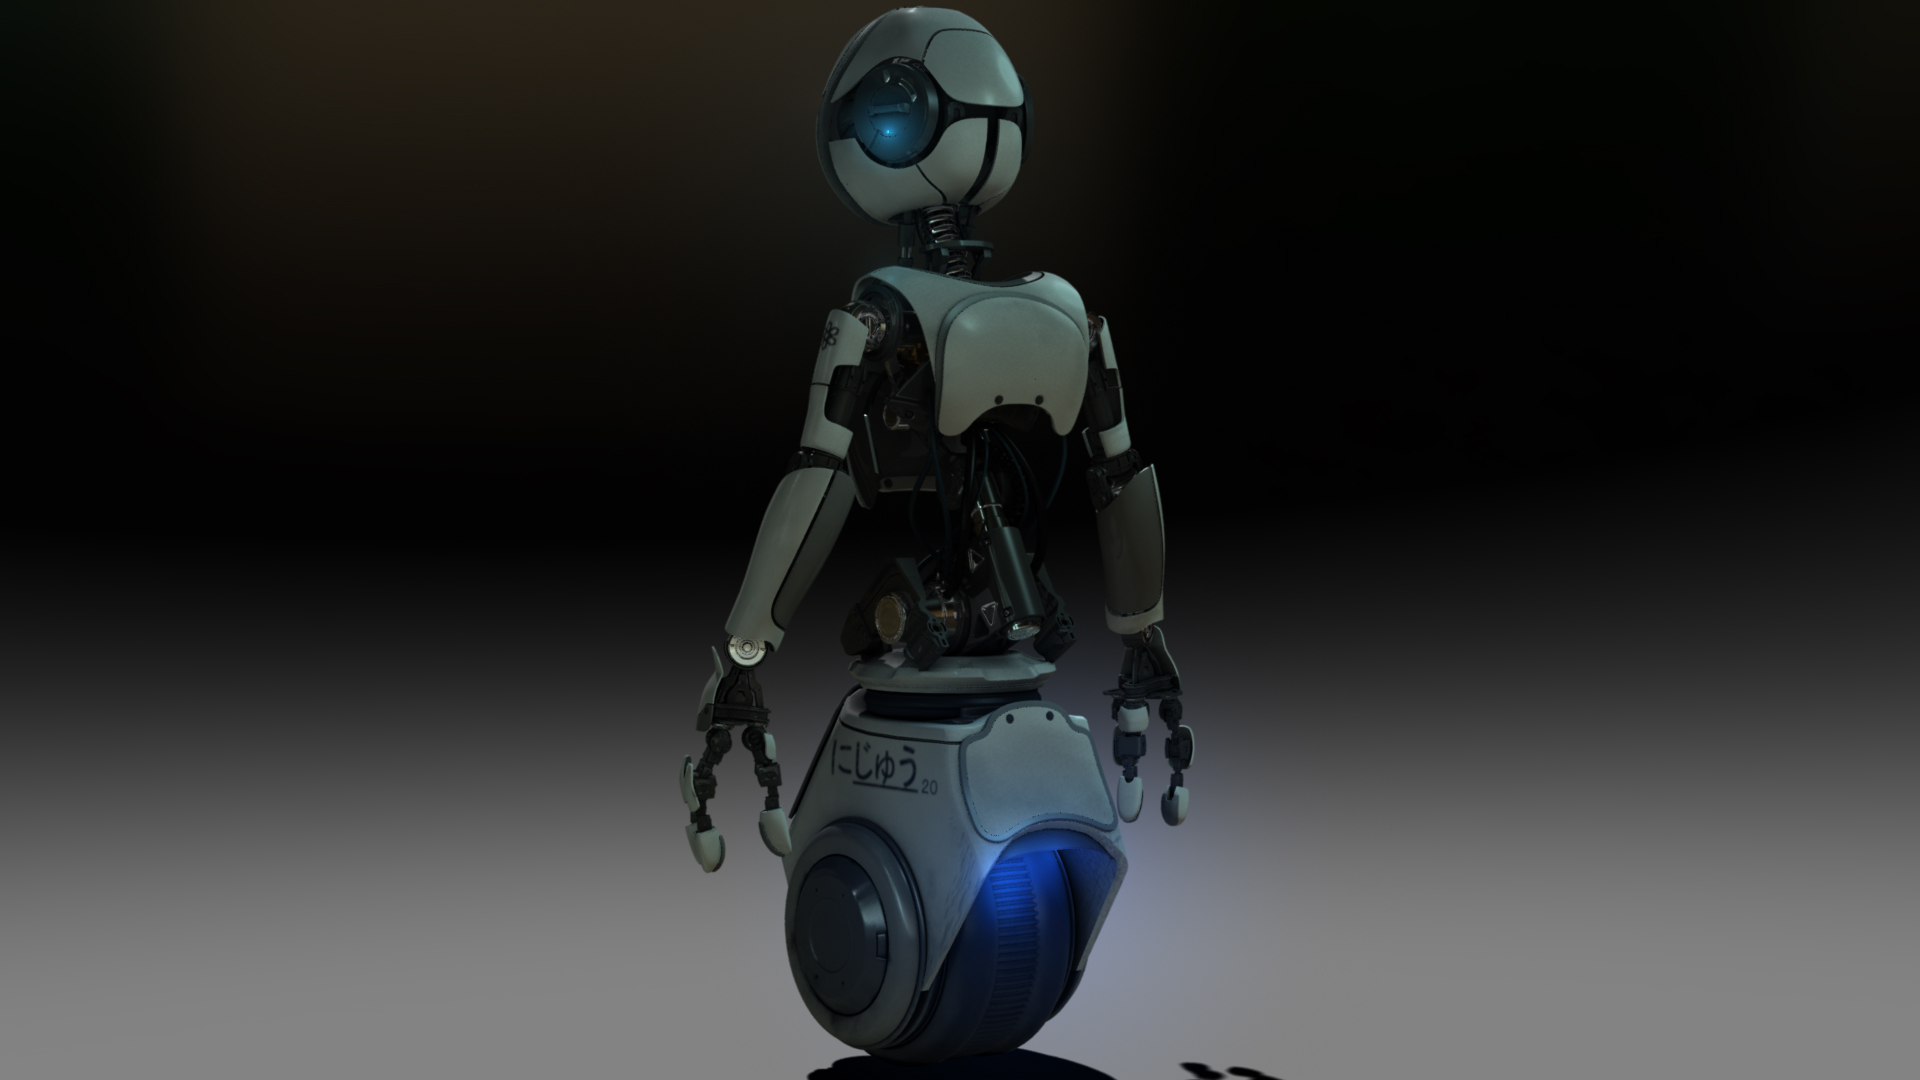 Kohler Robot